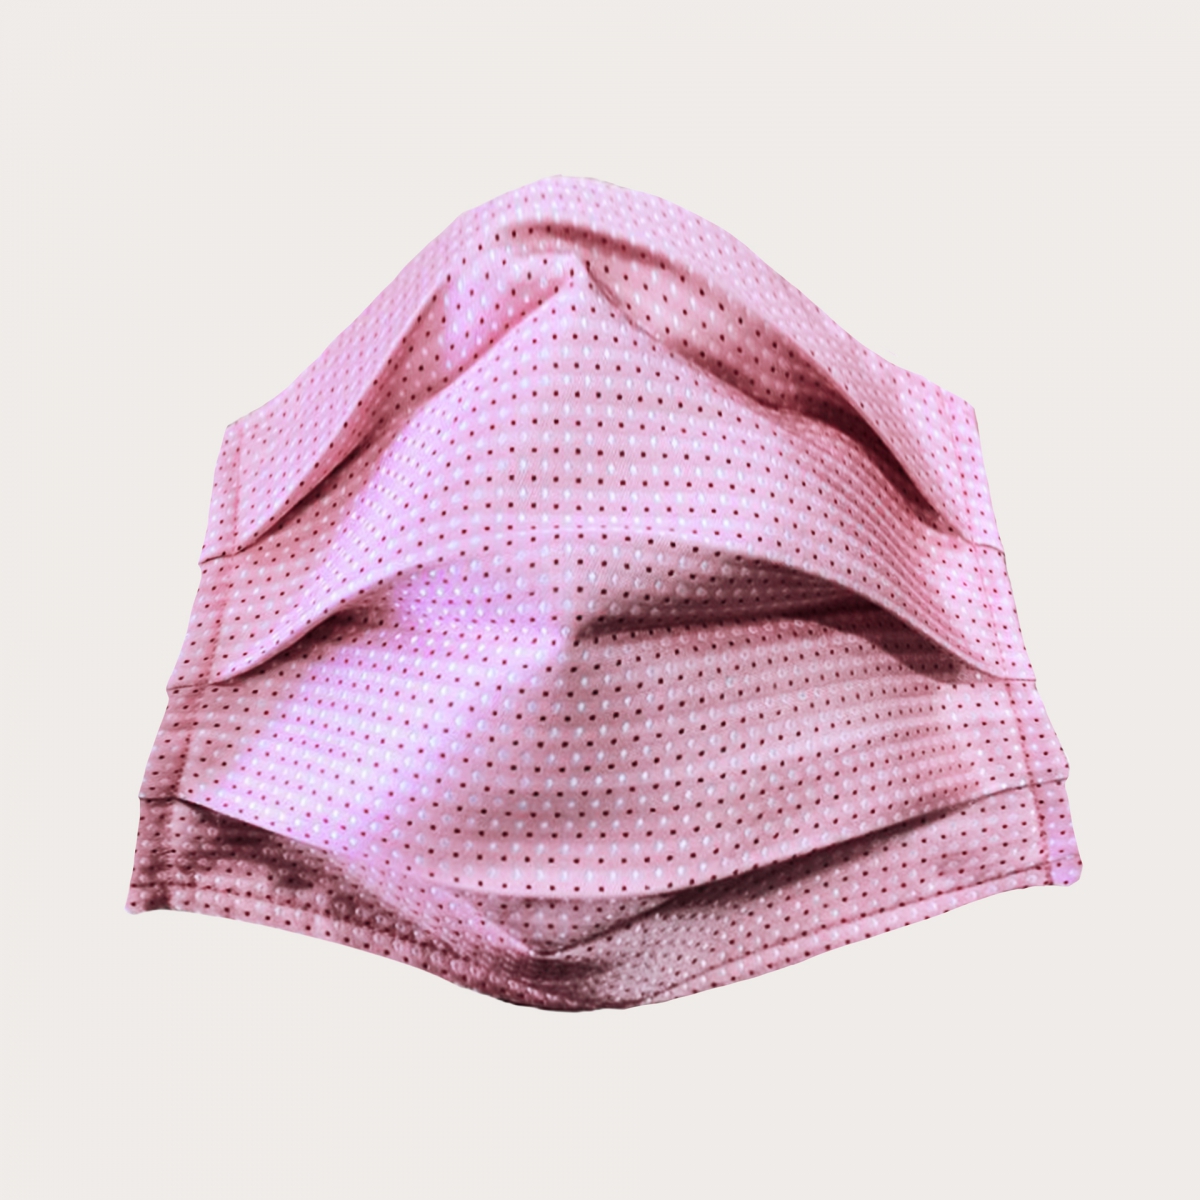 masque en tissu lavable filtrant et soie rose à pois